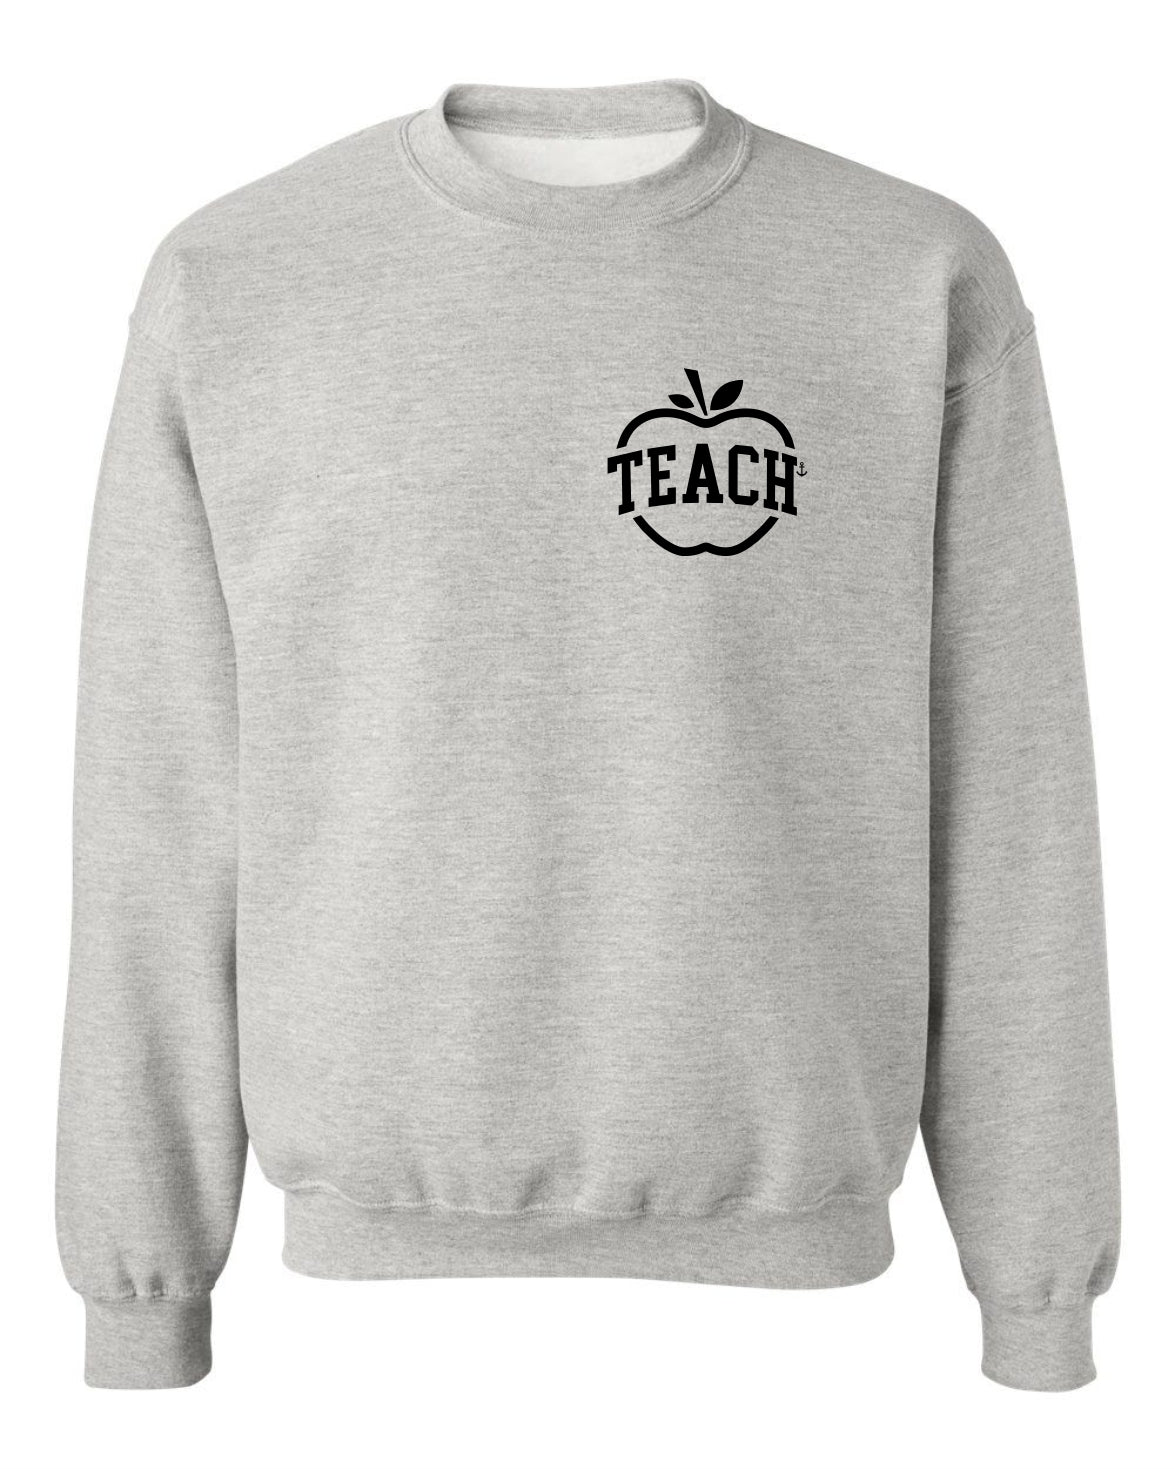 "Teach" Apple Crewneck Sweatshirt